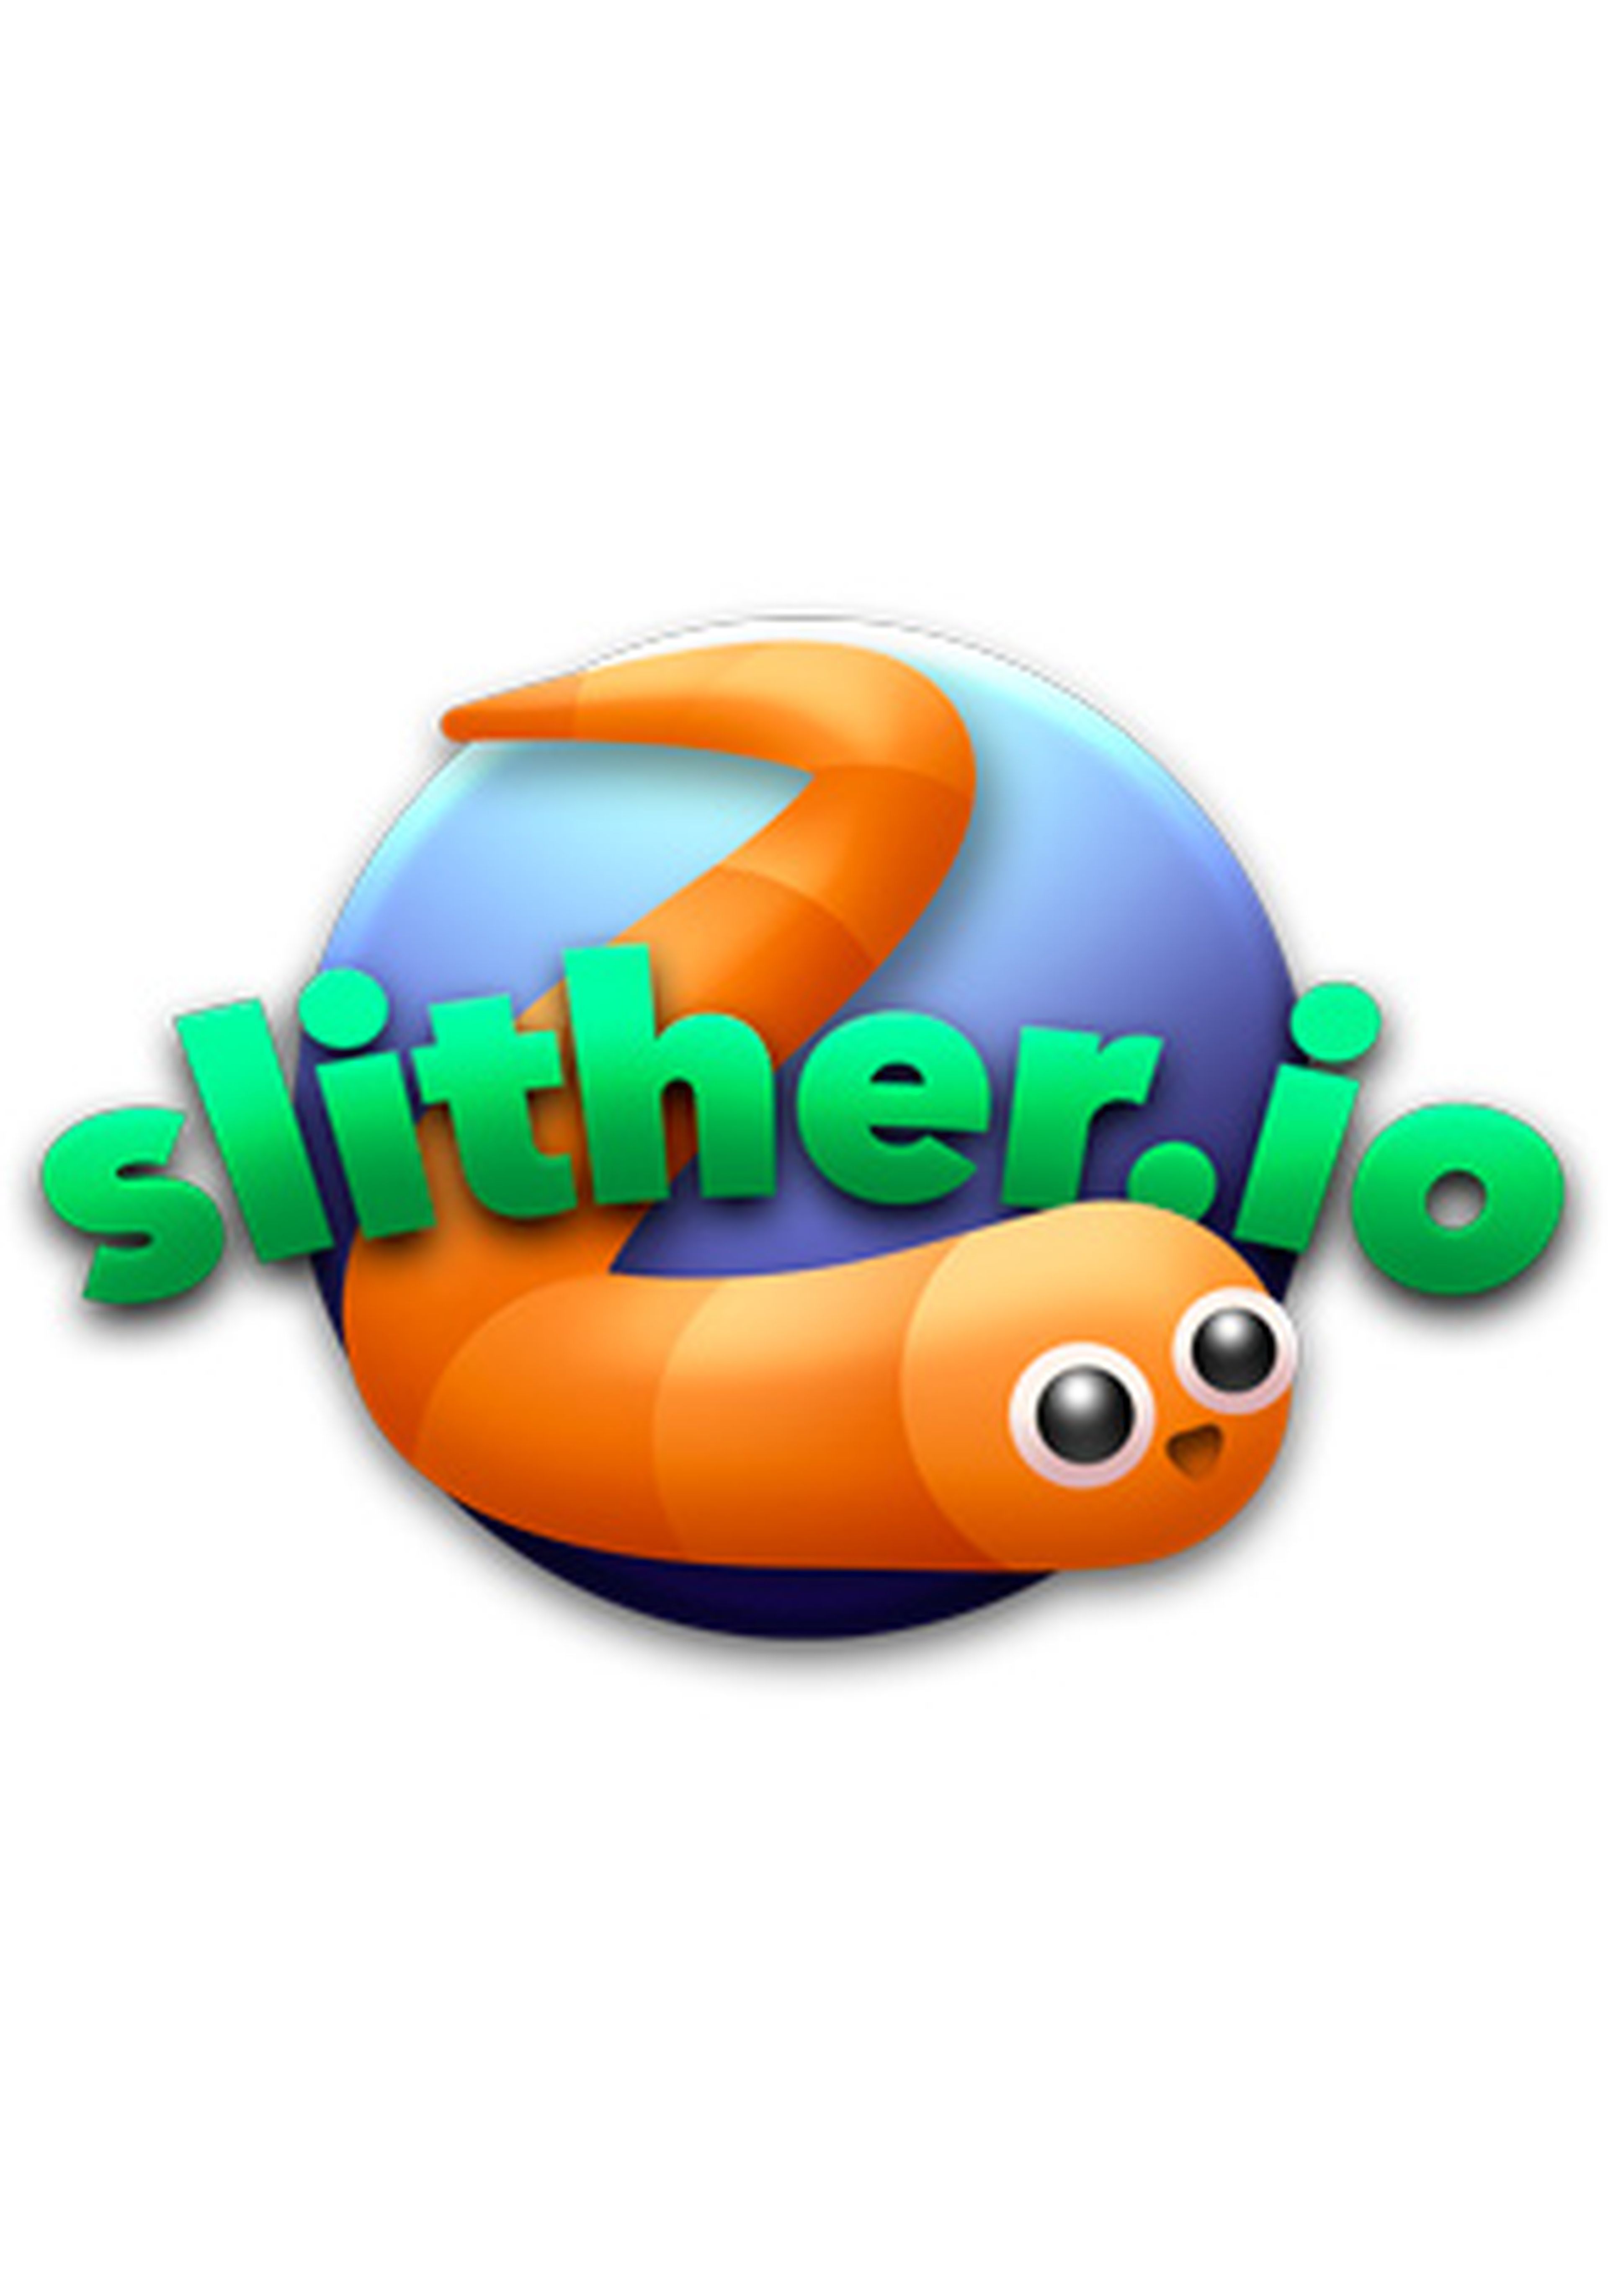 Slither.io, Perguntados: lista reúne dez jogos para desafiar os amigos